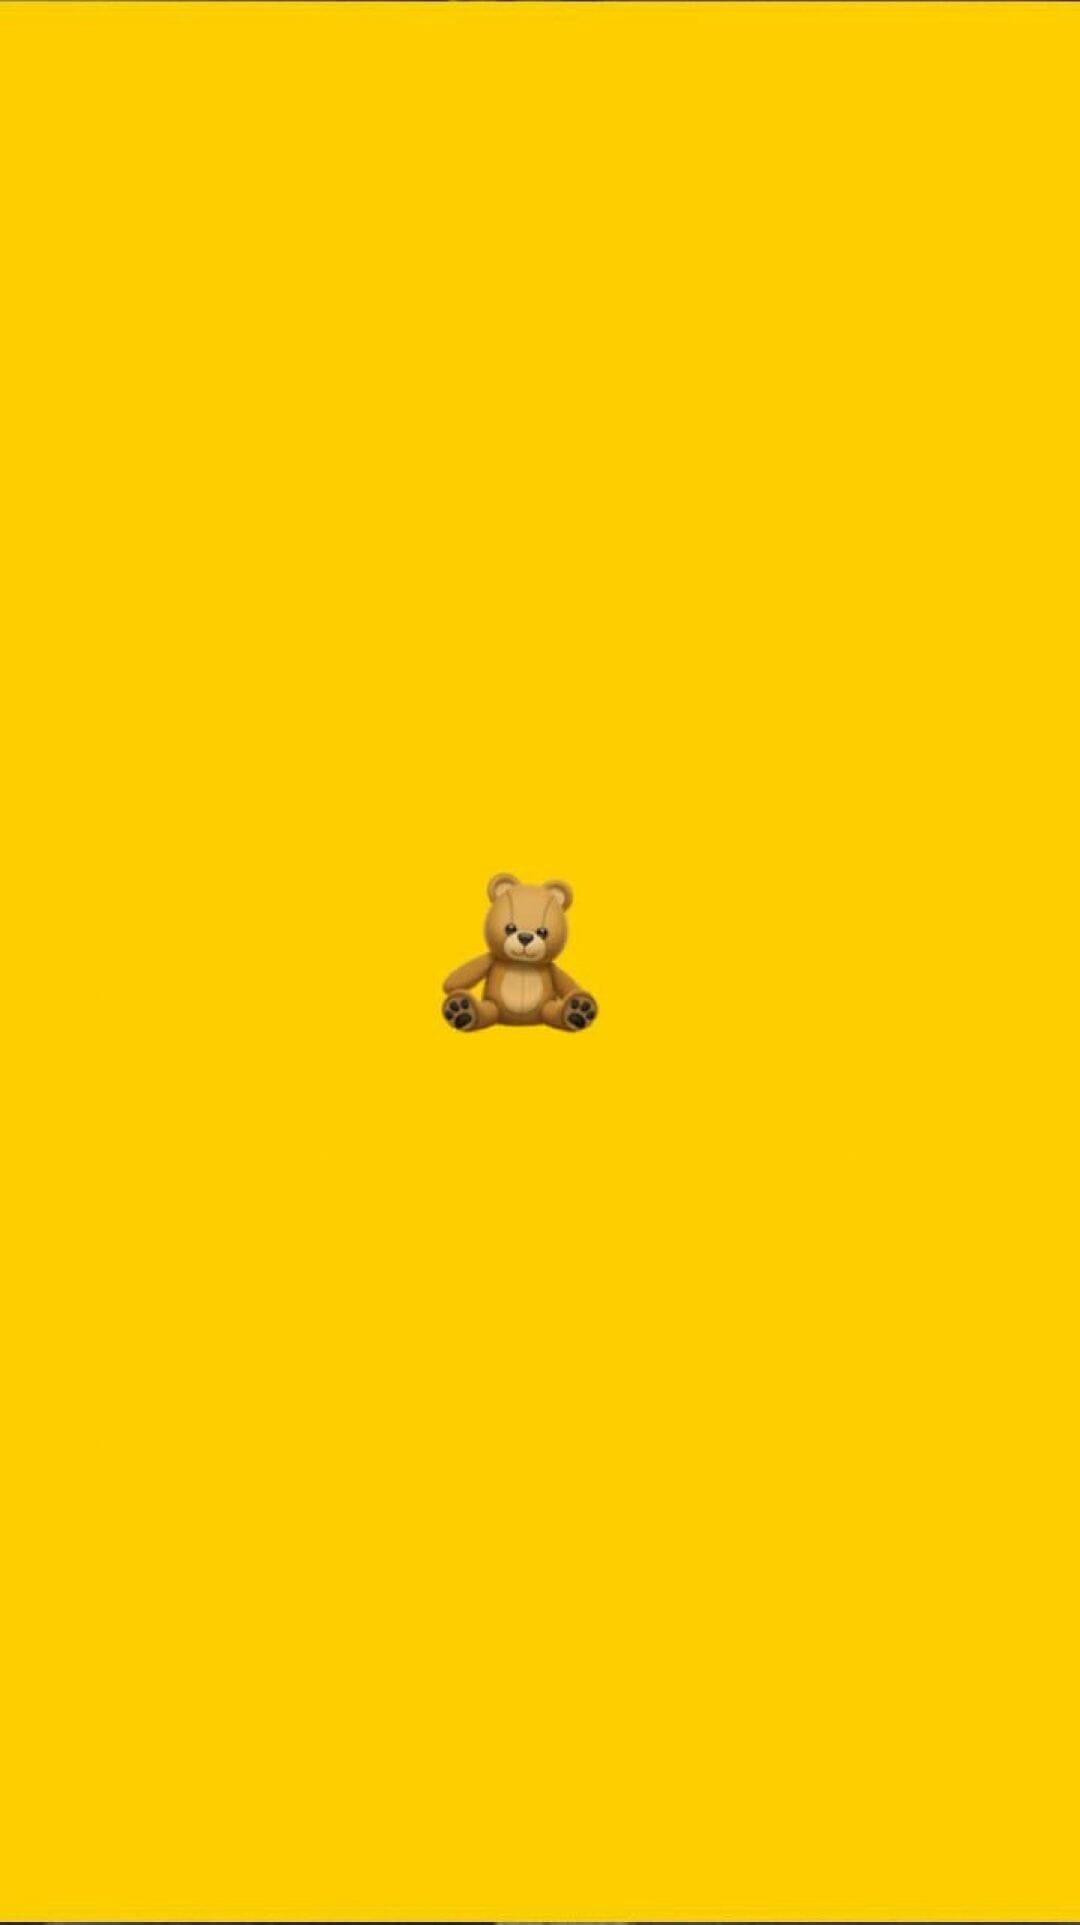 A teddy bear emoji on a yellow background - Emoji